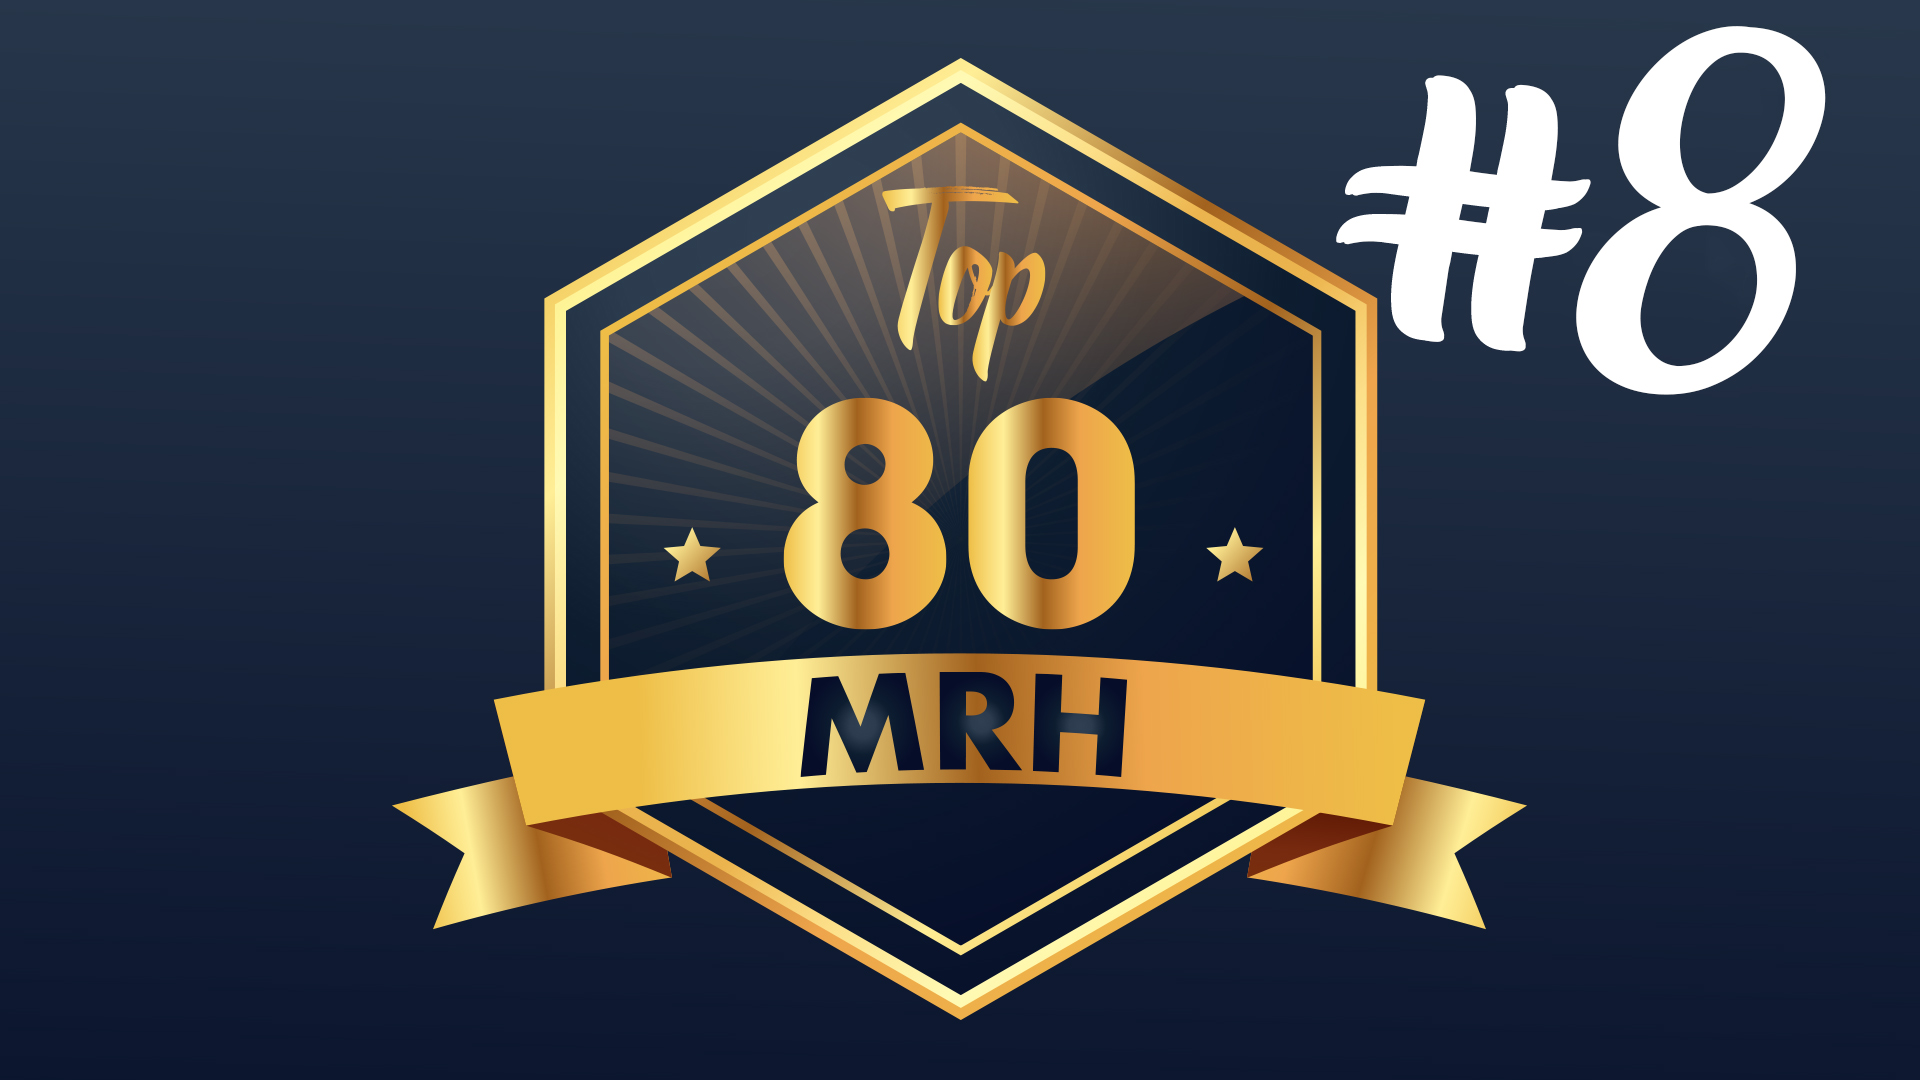 Top 80 MRH - Qui fera partie du 8e classement Top MRH